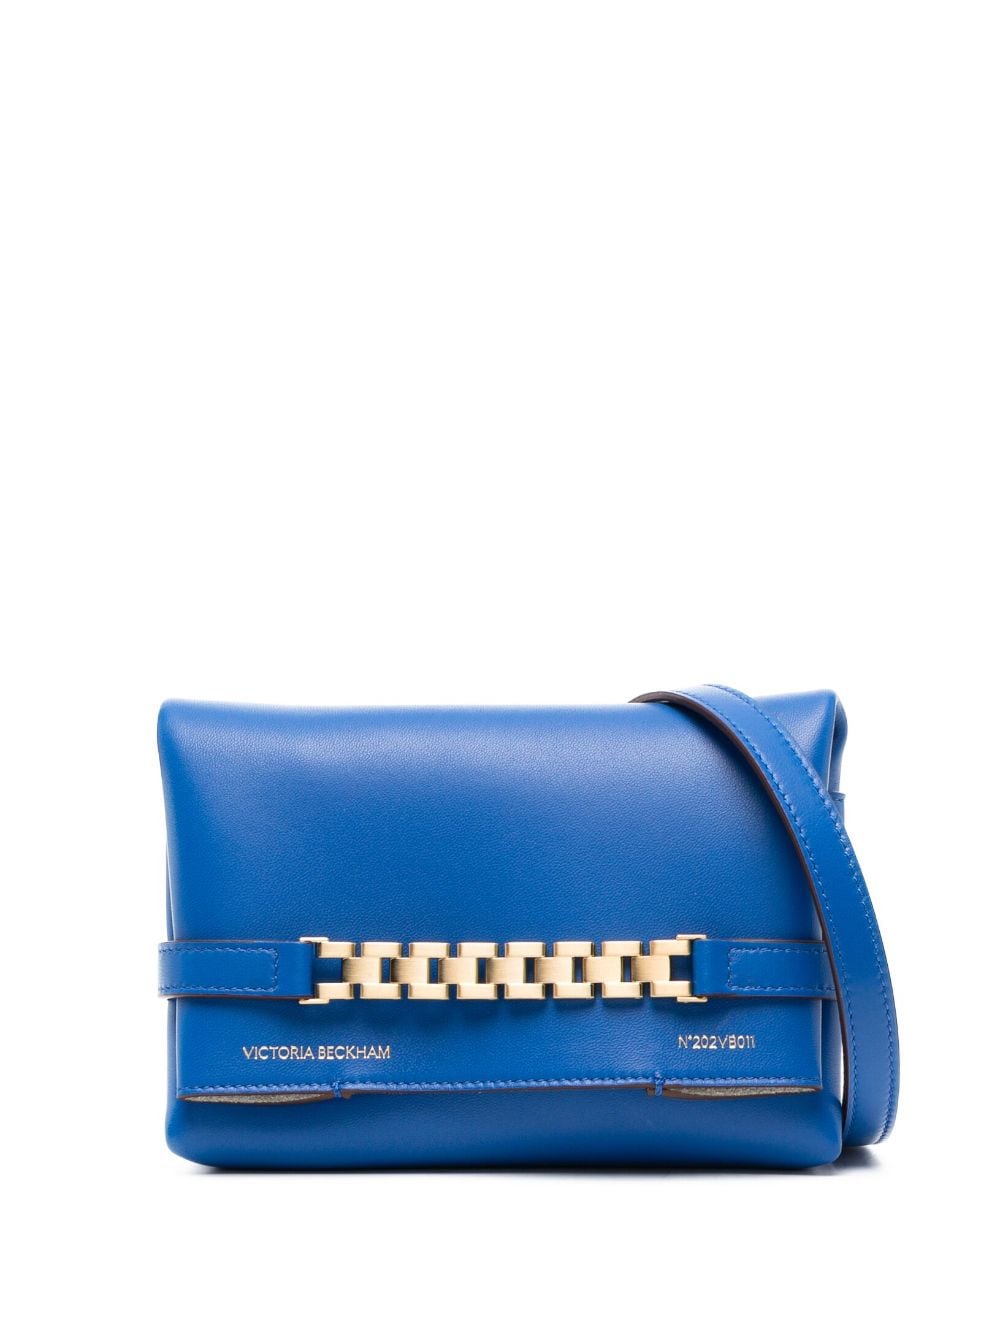 Victoria Beckham Chain Pouch leather tote bag - Blue von Victoria Beckham